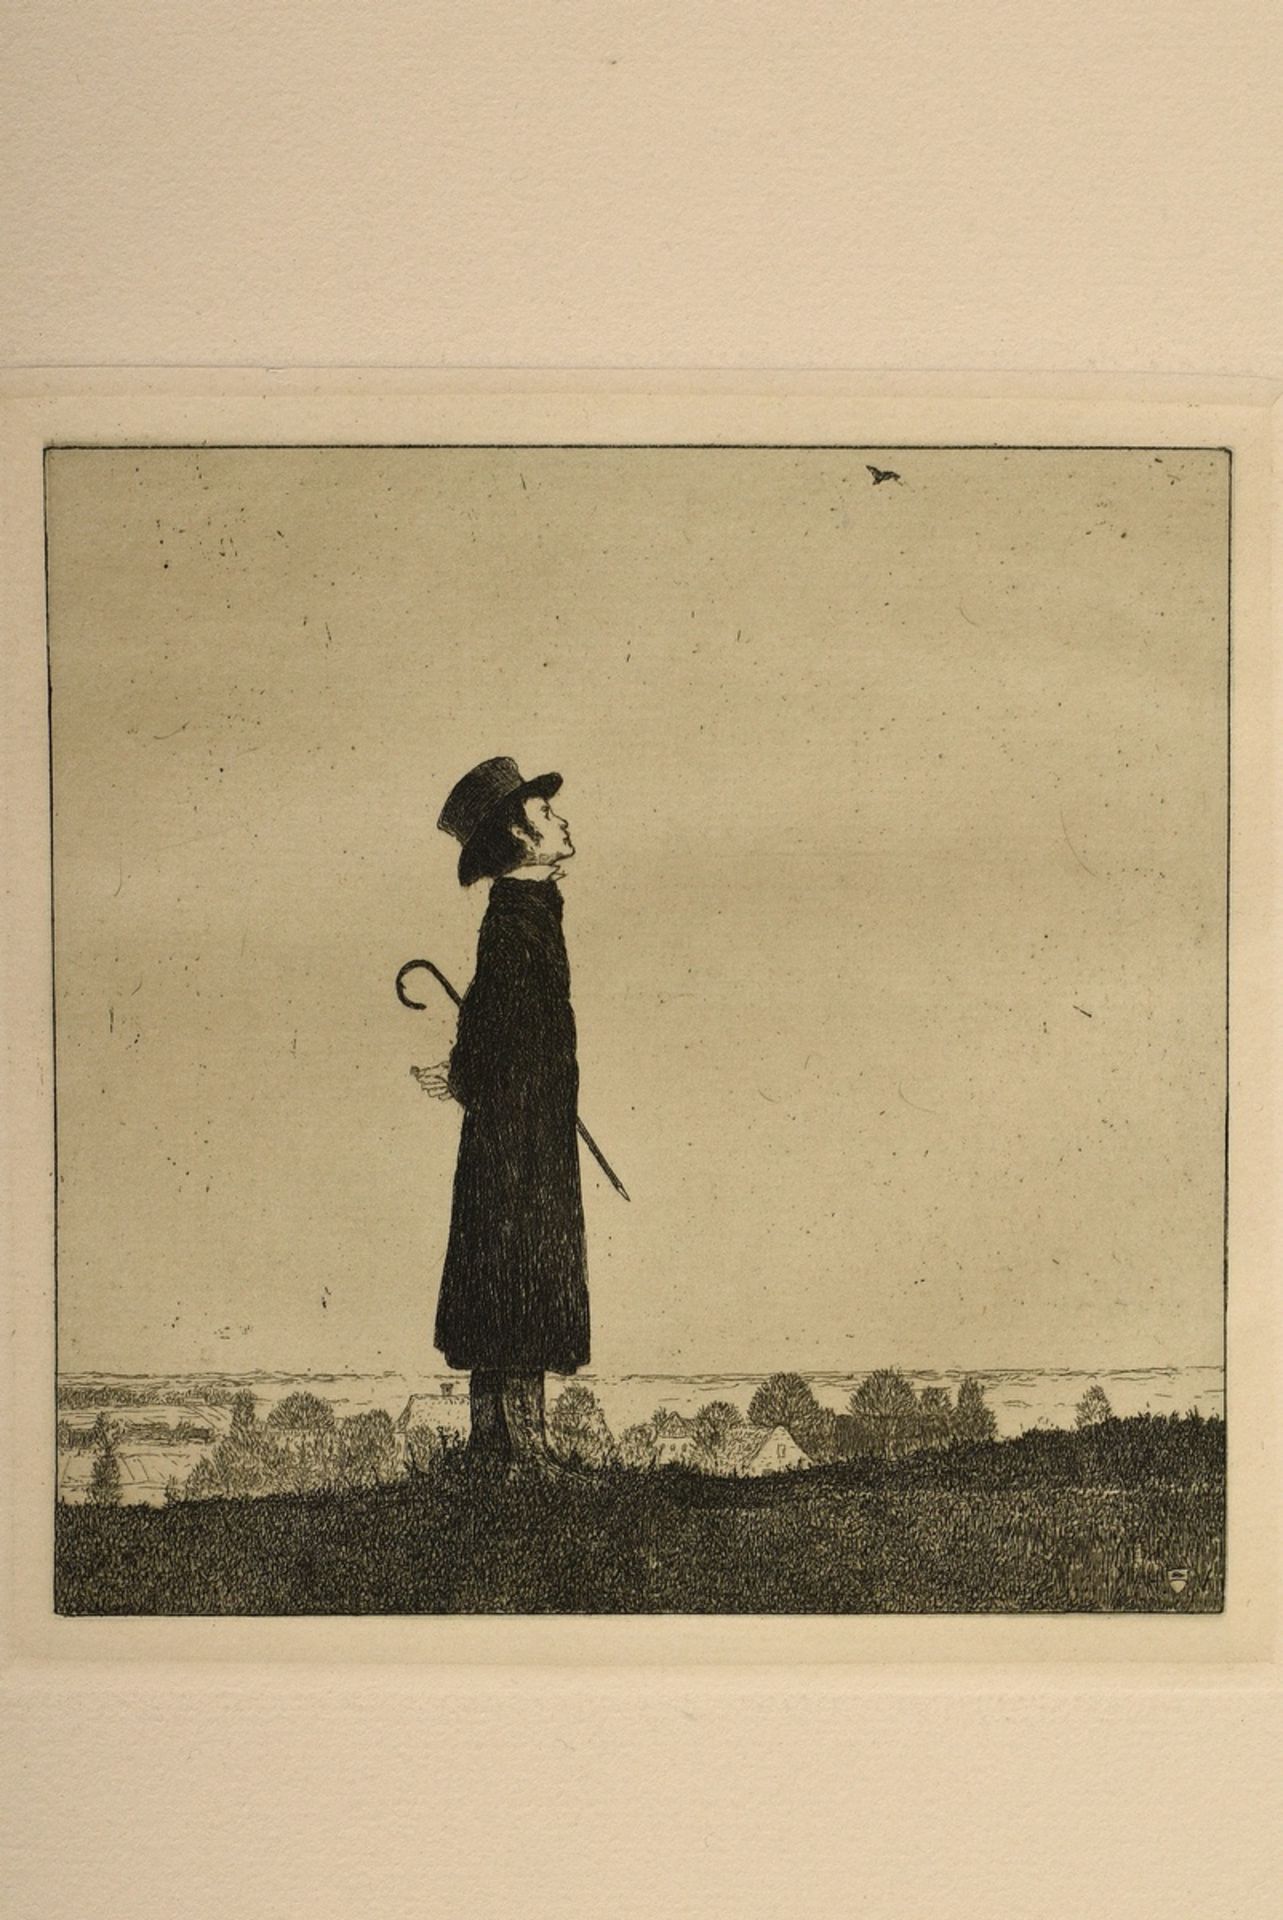 Vogeler, Heinrich (1872-1942) "An den Frühling" 1899/1901, portfolio with 10 etchings and prelimina - Image 21 of 25